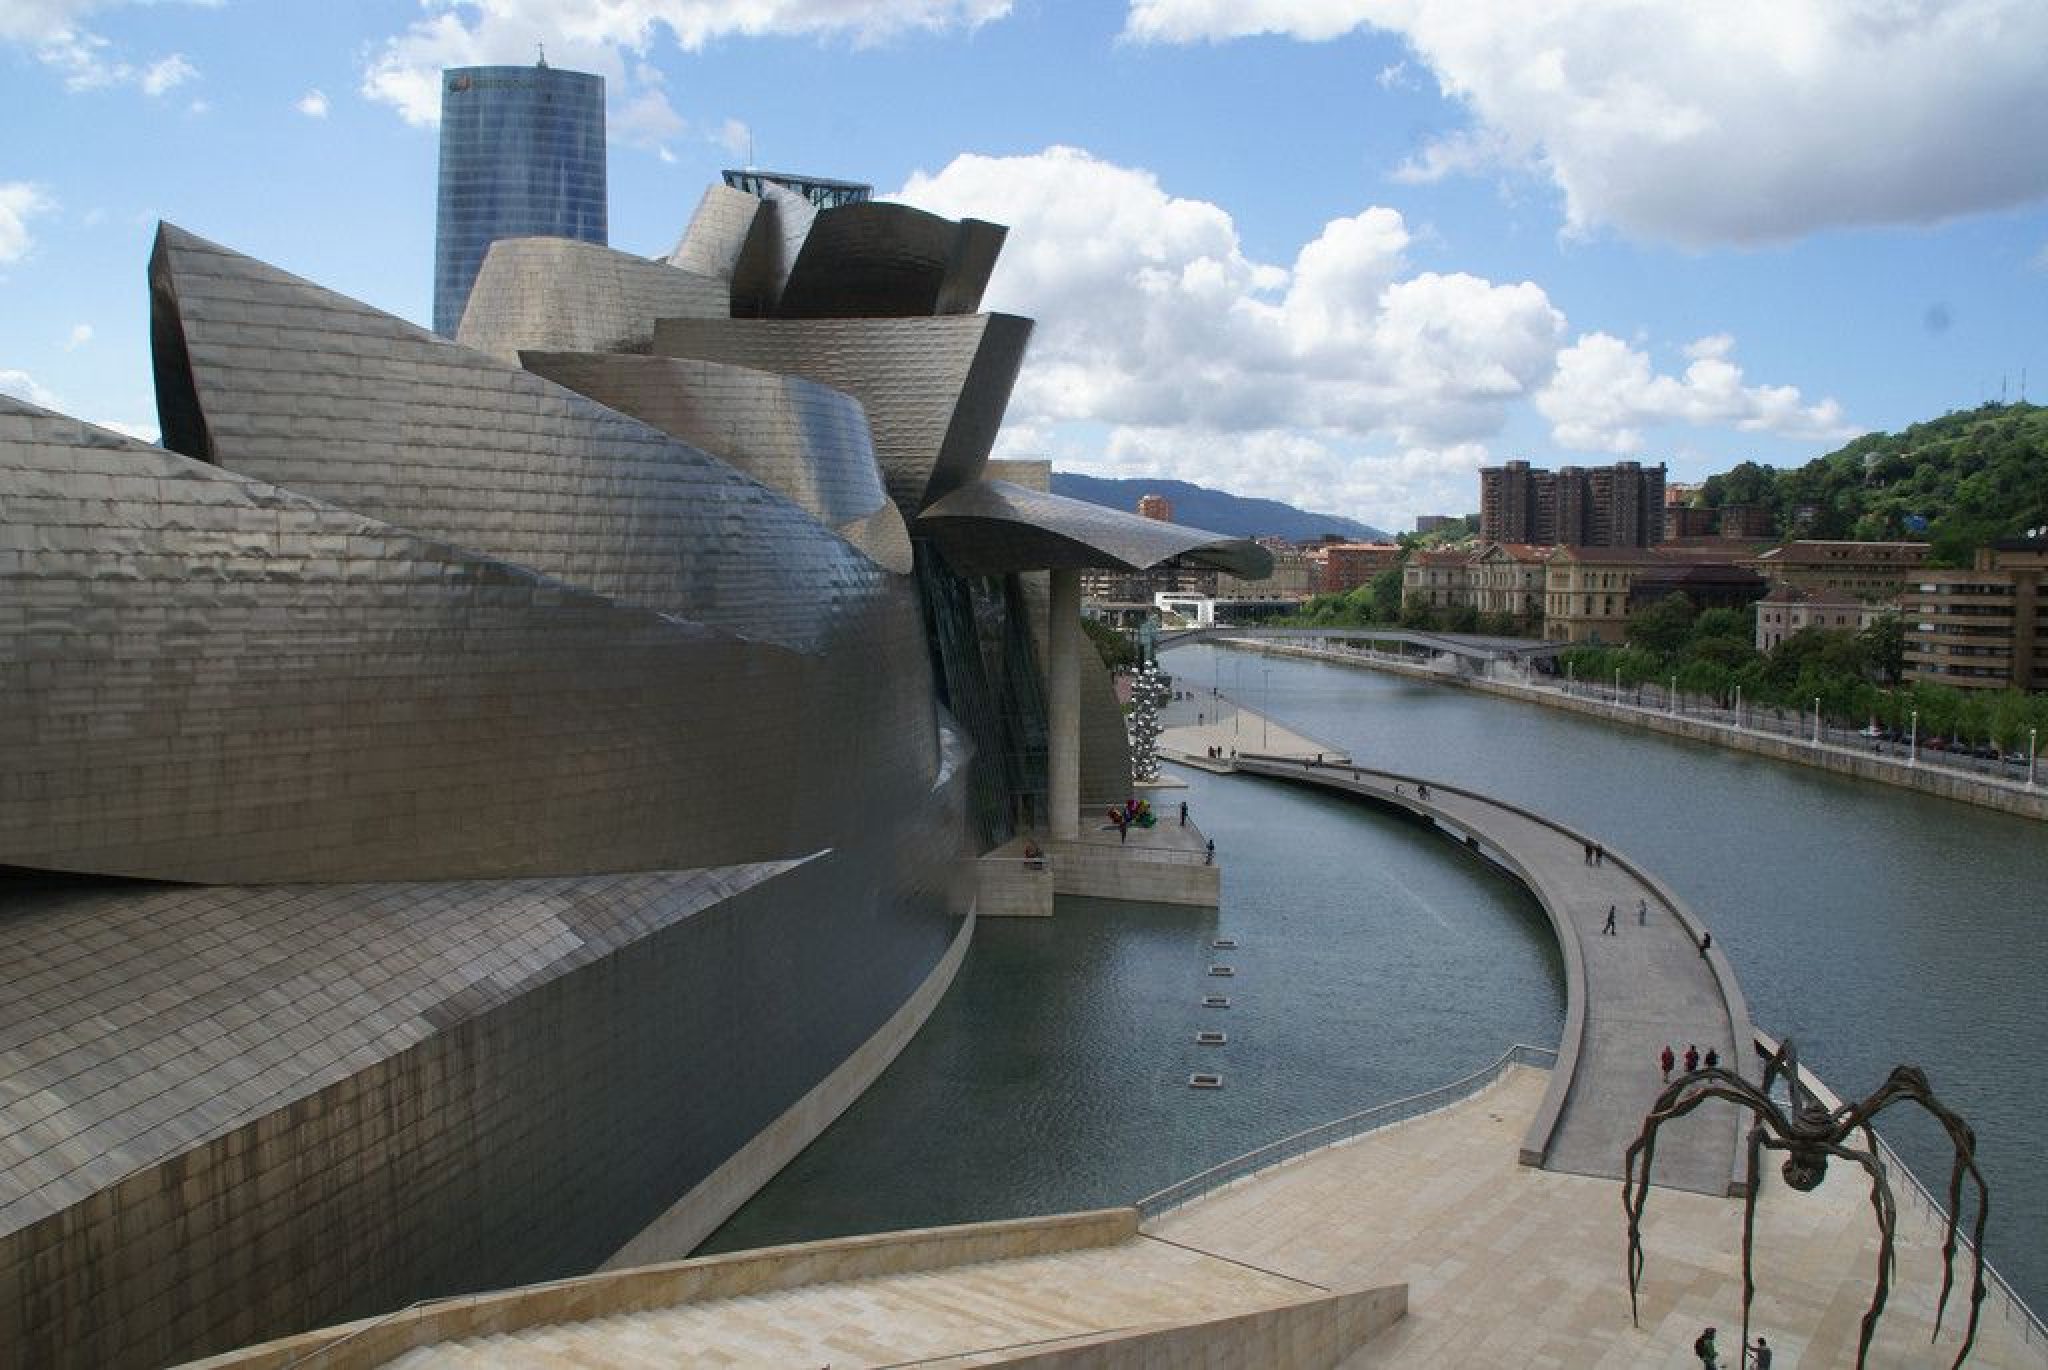 The Guggenheim Museum Bilbao Frank Gehry Arch O Com